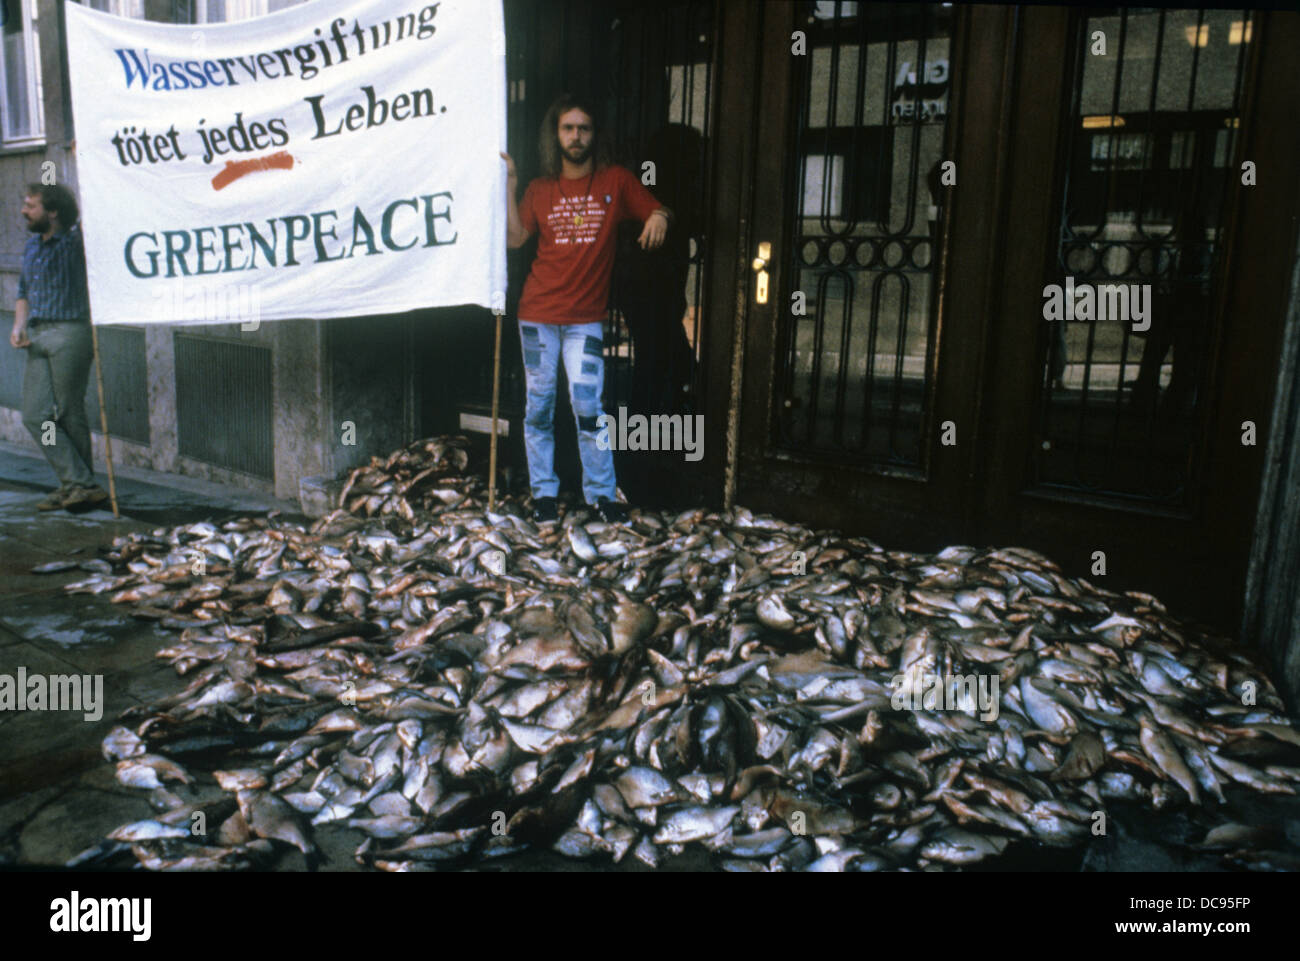 Zwei Mitglieder der Umweltgruppe Greenpeace mit einem Banner und einem Haufen toter Fische an der landwirtschaftlichen Fakultät in Stuttgart am 21. August 1985. Stockfoto